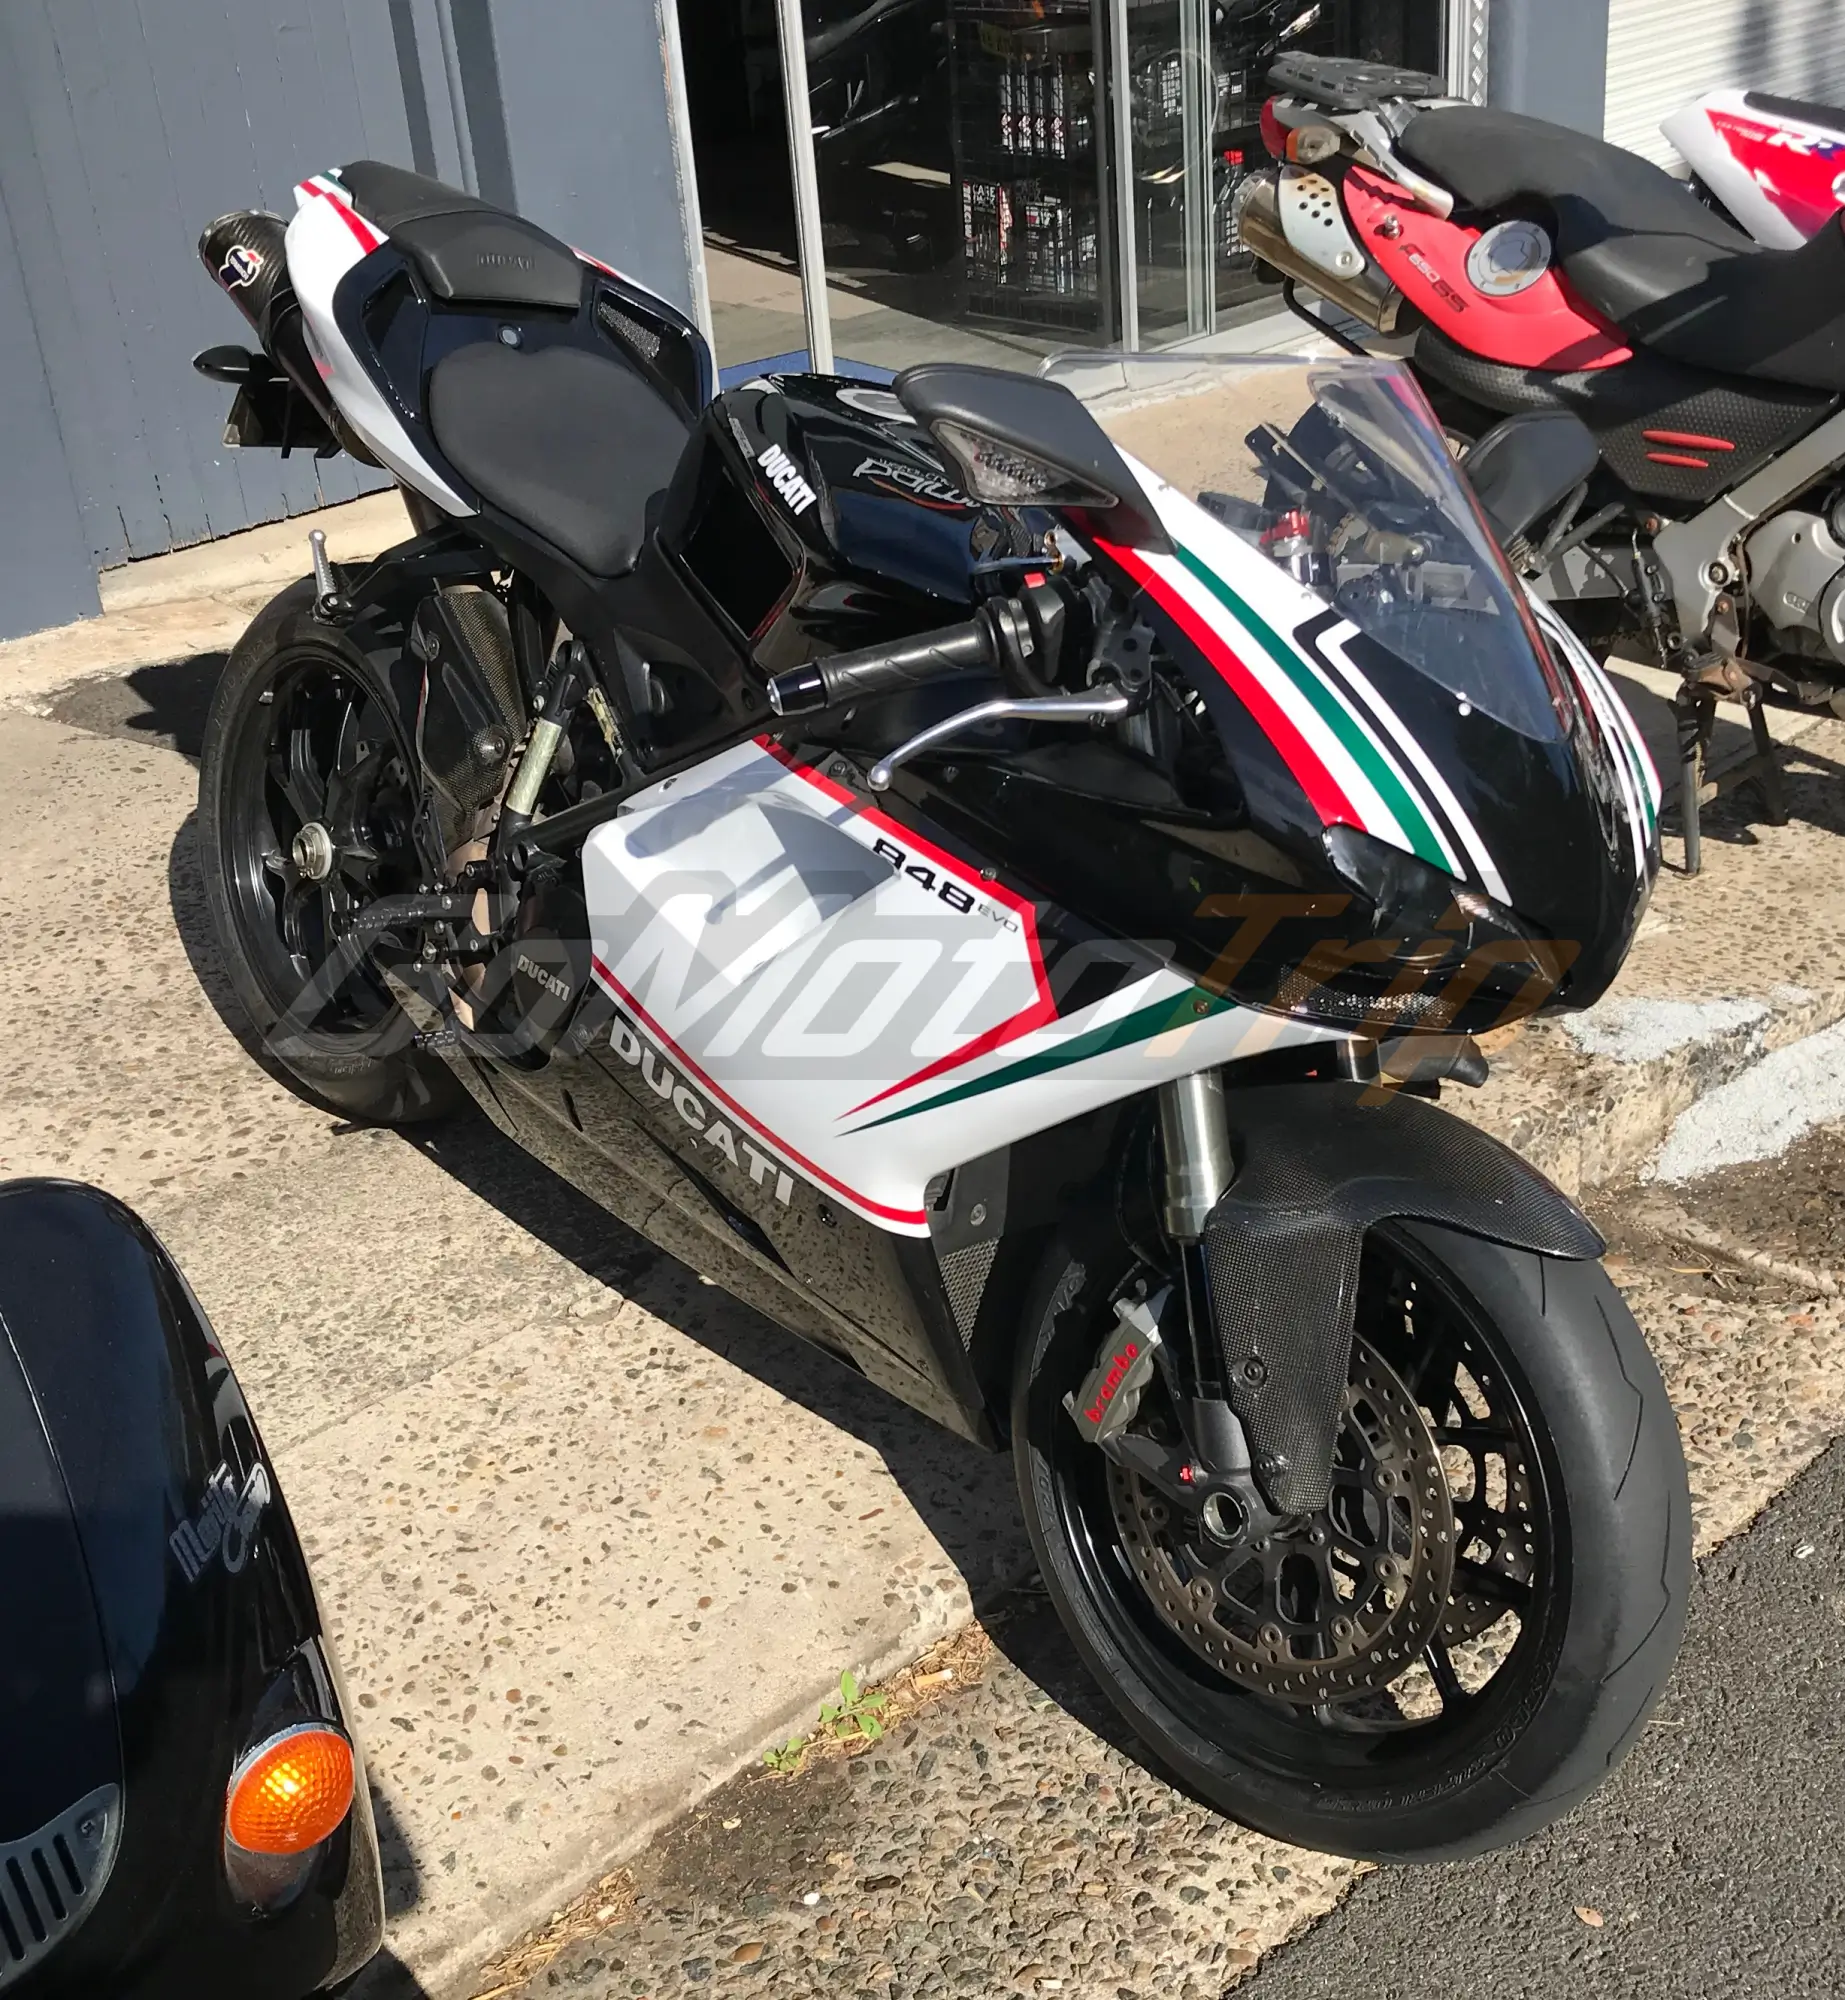 Rider-Review-Justin-Ducati-848-EVO-Tricolore-Fairing-2